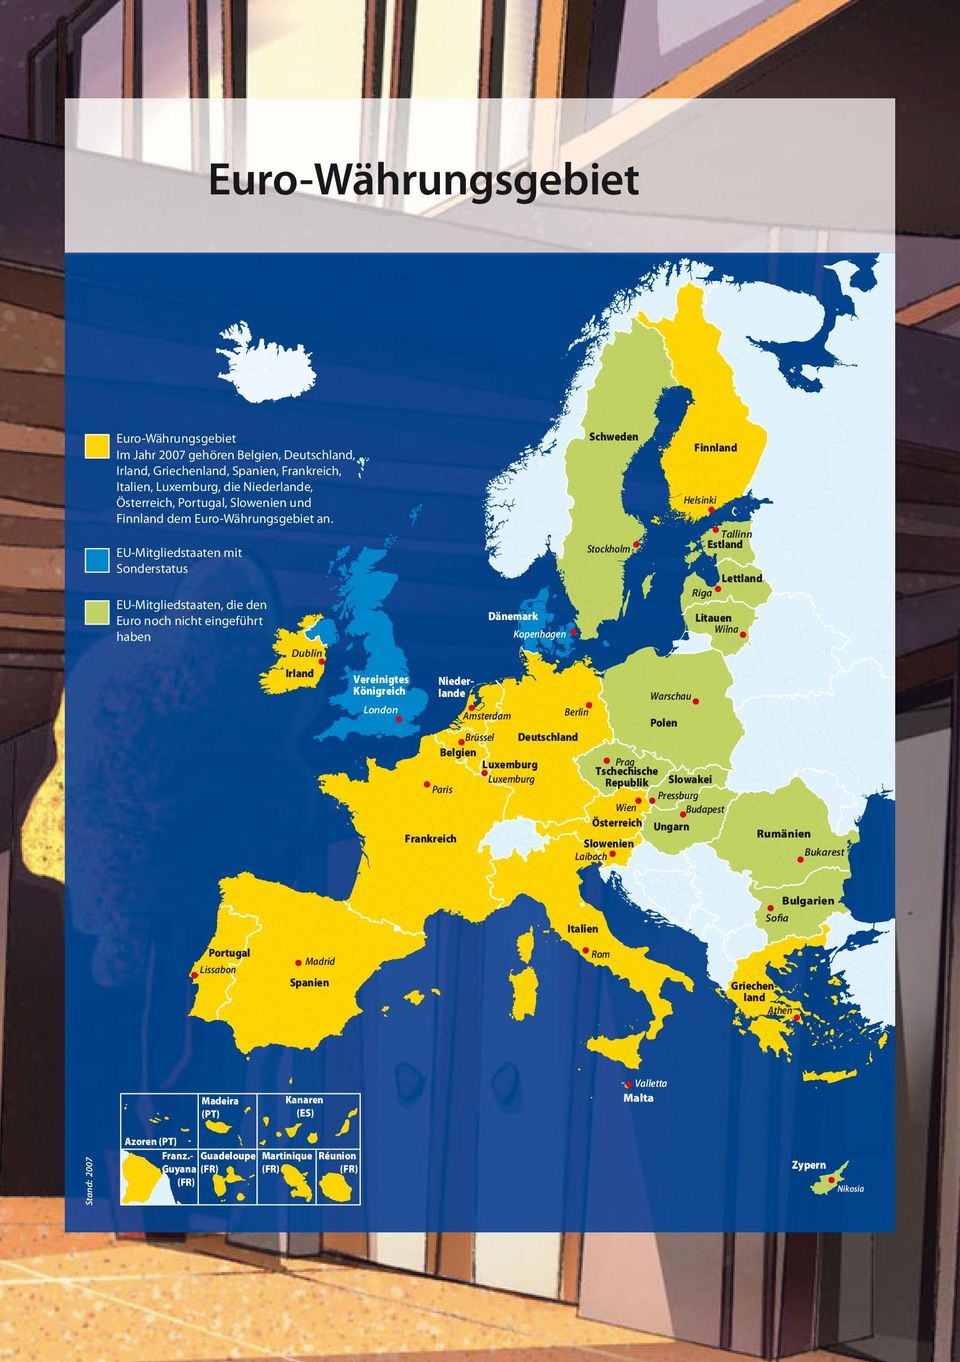 EU-Mitgliedstaaten mit Sonderstatus EU-Mitgliedstaaten, die den Euro noch nicht eingeführt haben Dublin Irland Dänemark Kopenhagen Schweden Stockholm Finnland Helsinki Tallinn Estland Lettland Riga